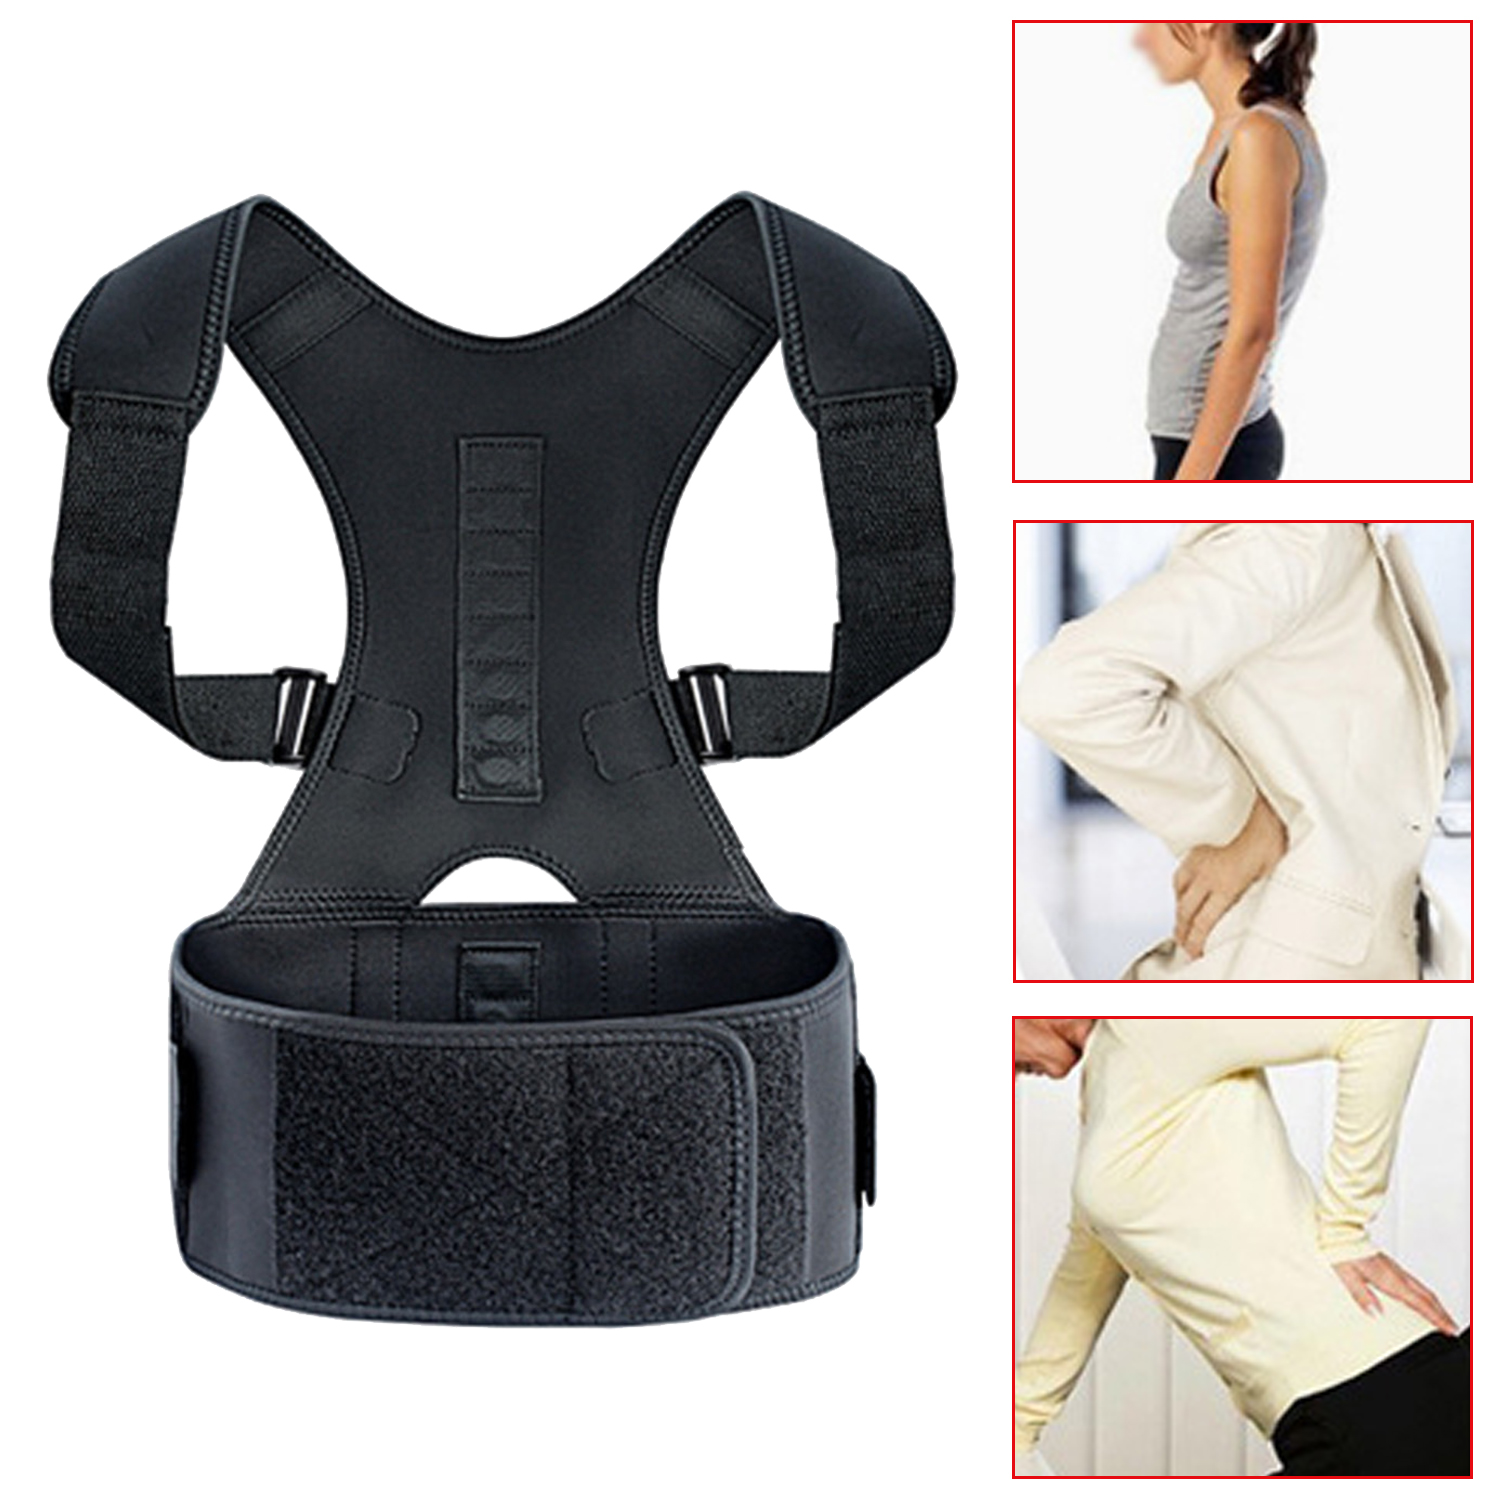 Soporte ajustable para respaldo de columna vertebral, Corrector de postura moderno para hombros y espalda, cinturón de corrección de postura, tirantes para espalda escoliosis Unisex